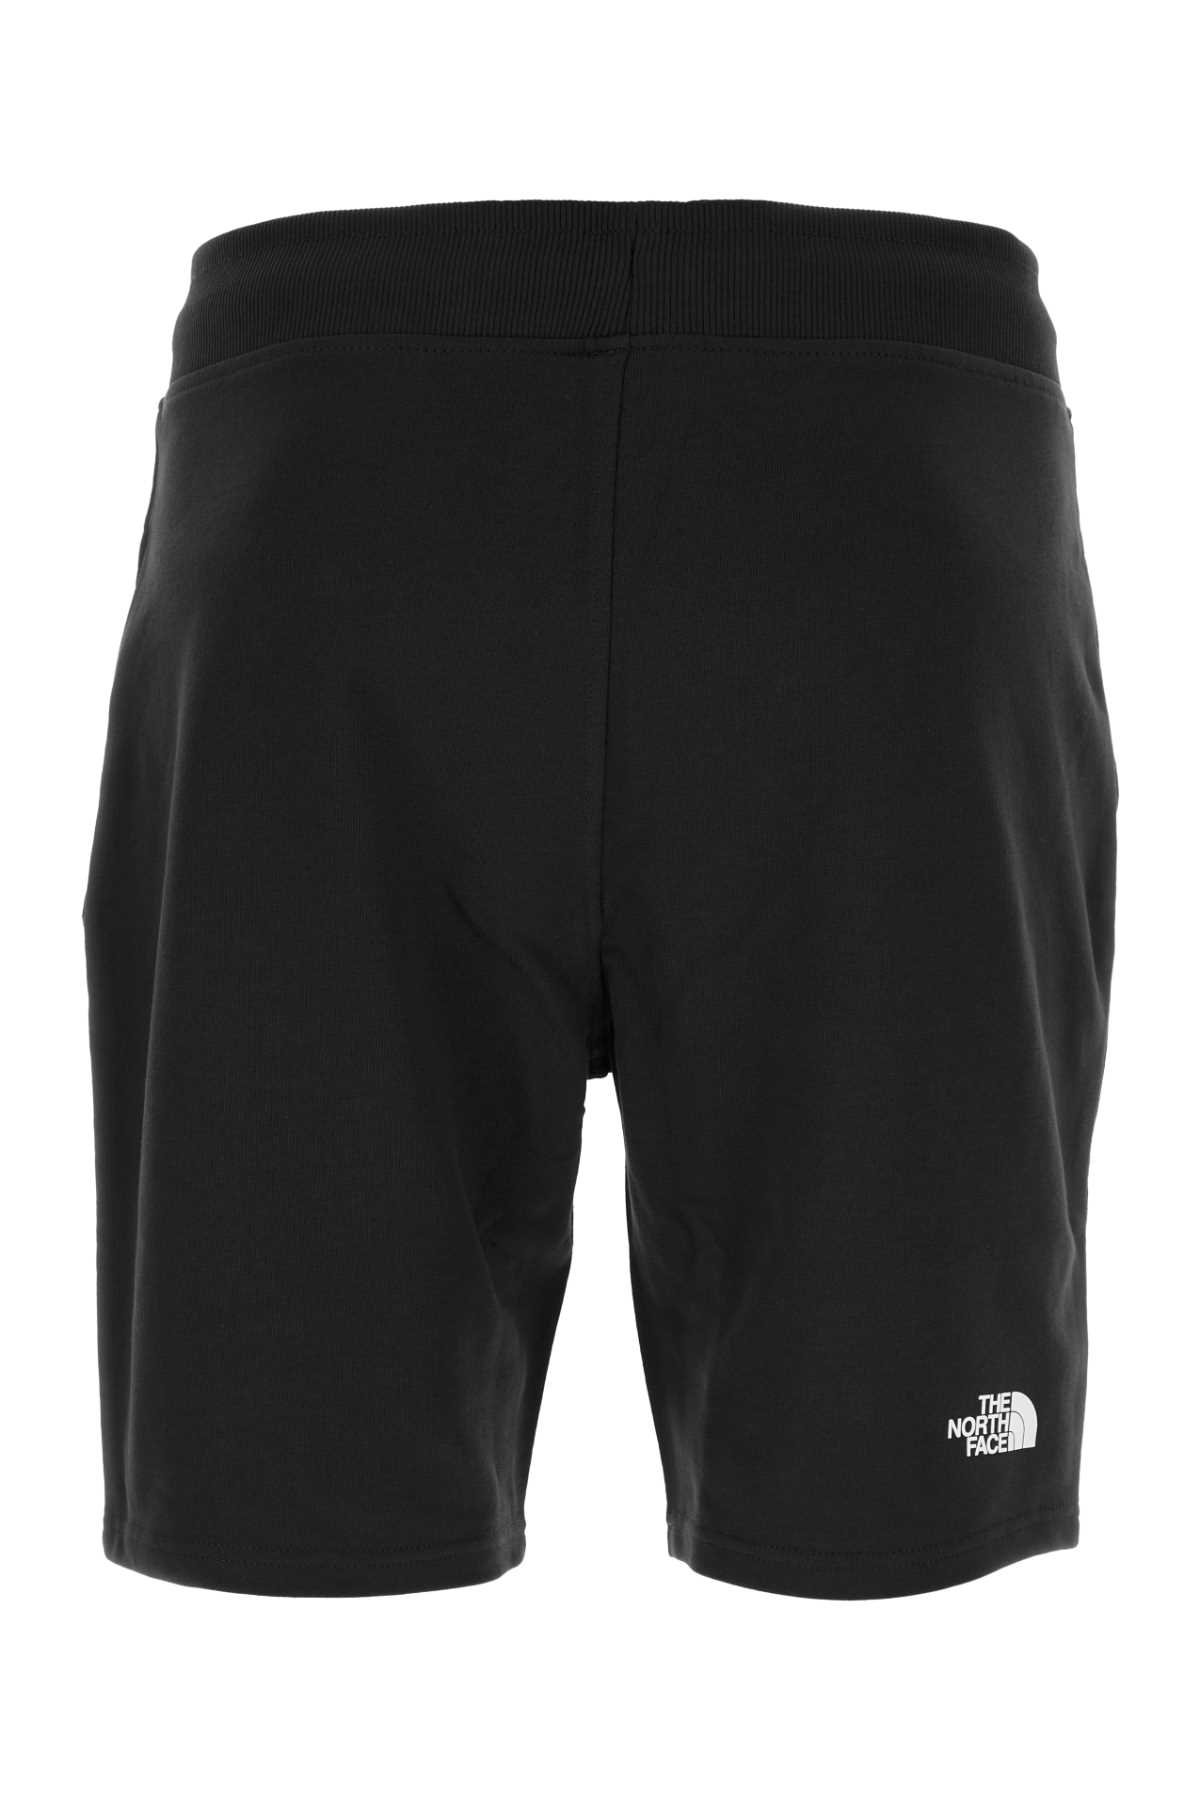 The North Face Black Cotton Bermuda Shorts In Tnfblack